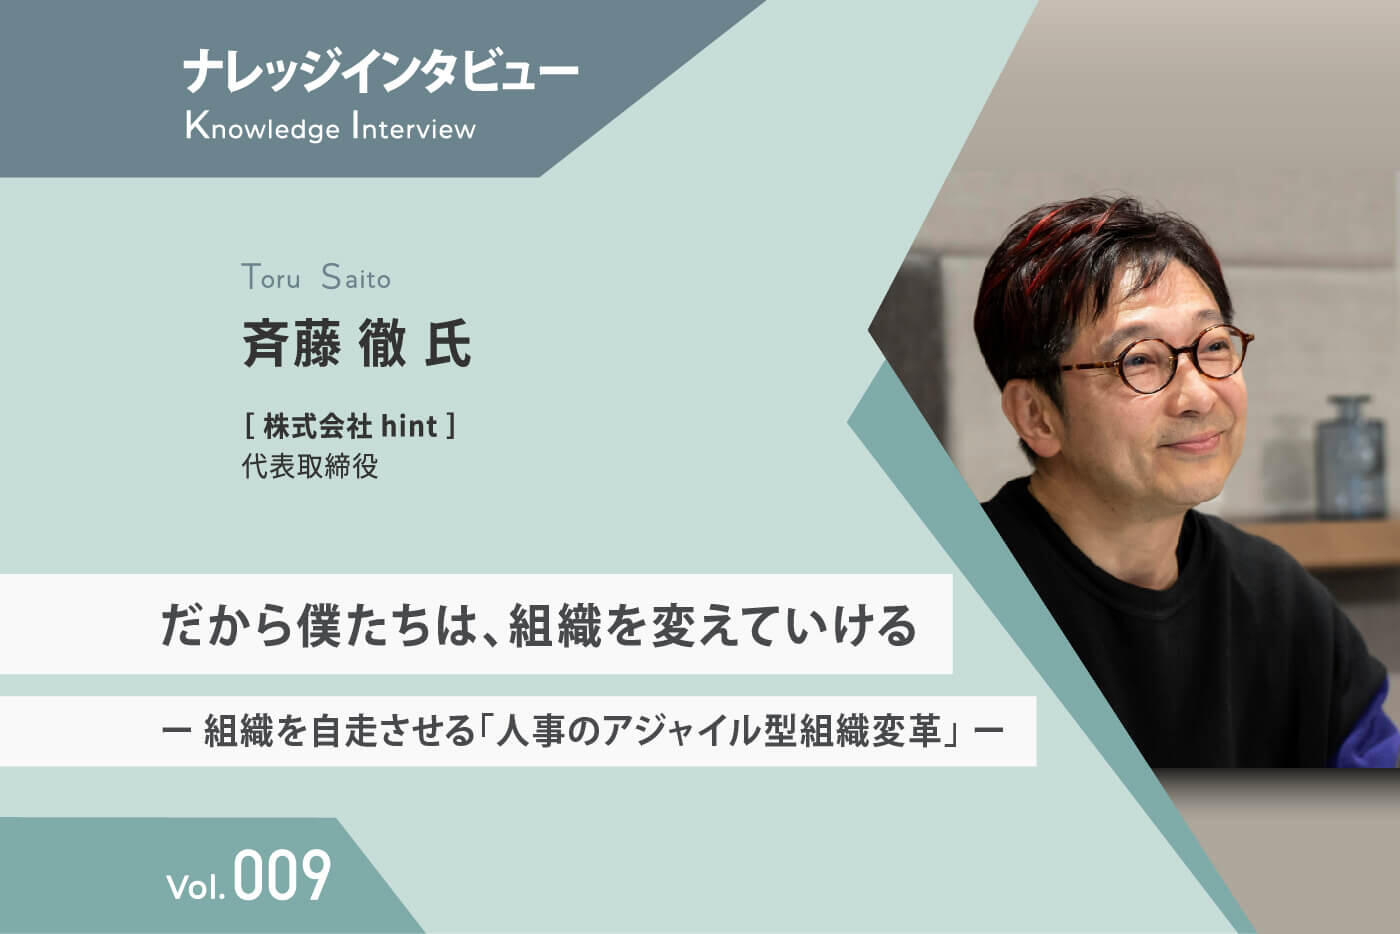 【ナレッジインタビュー 】 hint 斉藤氏 だから僕たちは、組織を変えていける